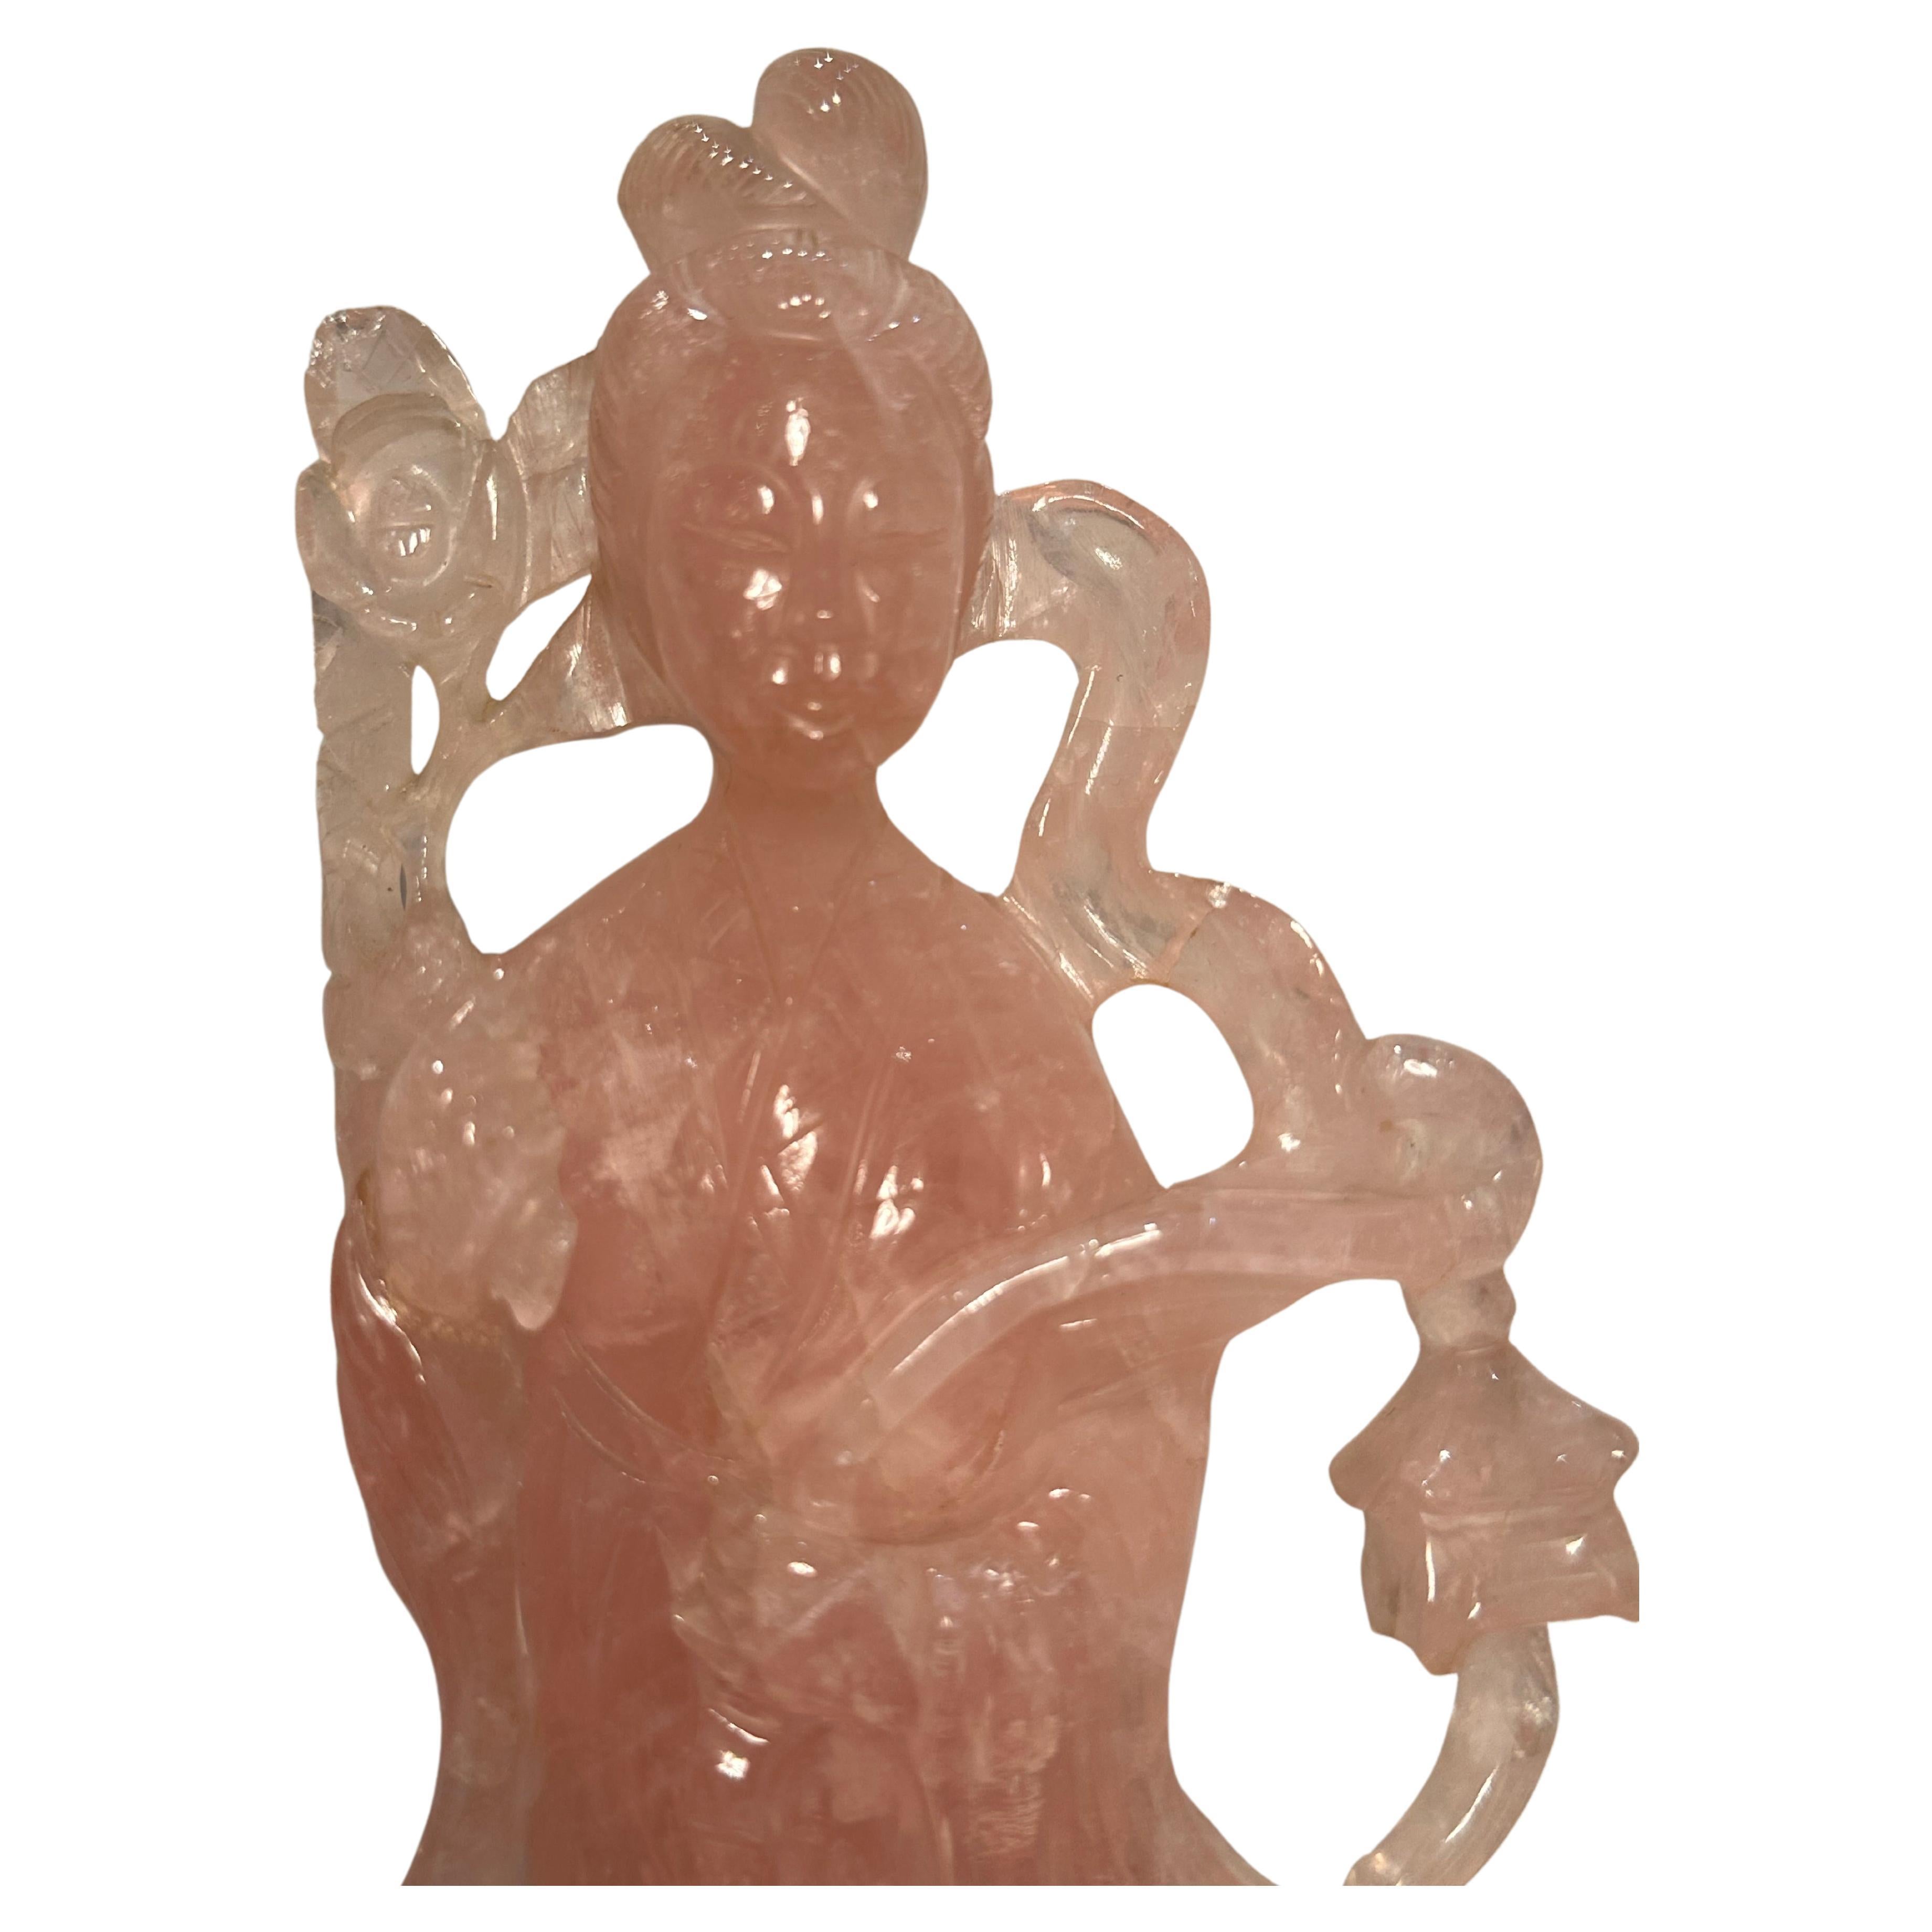 Exquisit handgefertigte und handgeschnitzte rosa Rosenquarz-Figur der Göttin Quan Yin.  Sie ist mit einer Girlande aus Lotusblüten in der Hand abgebildet und steht auf einem handgefertigten und handgeschnitzten Ständer aus Rosenholz.

Quan Yin, auch